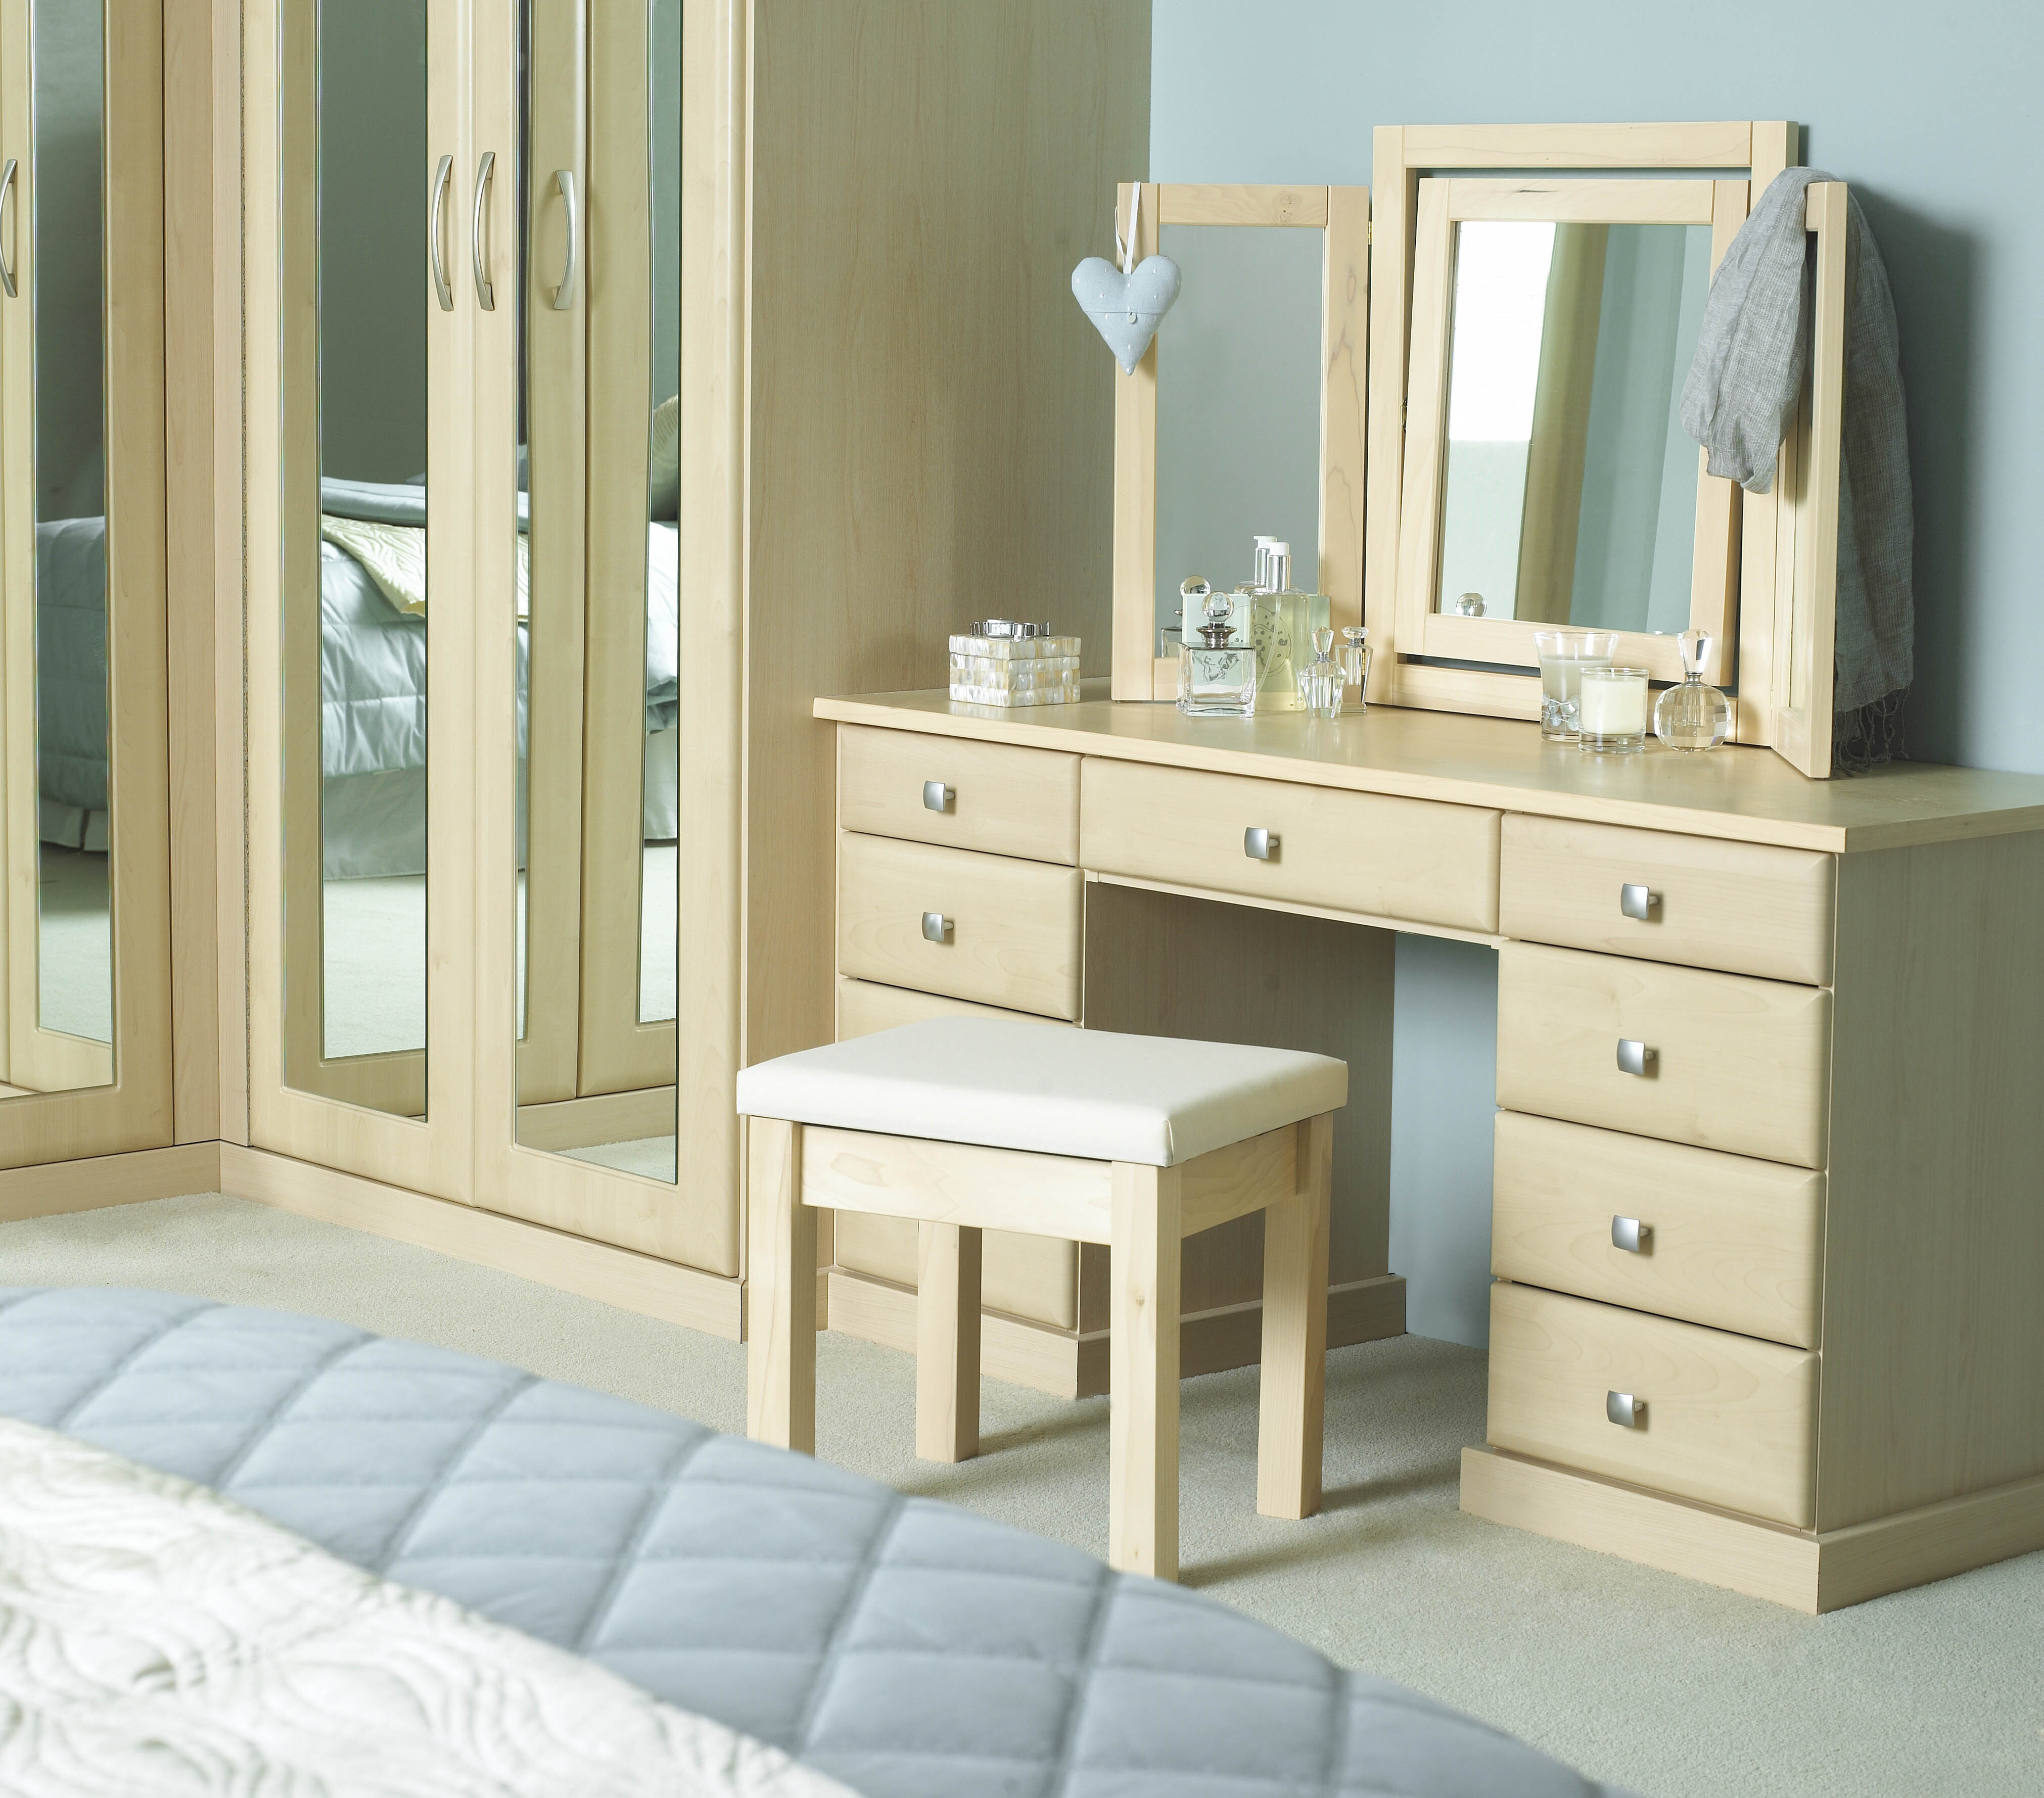 Bedroom Outstanding Best Miracle Bedroom Vanity Sets Collection regarding measurements 4044 X 3558